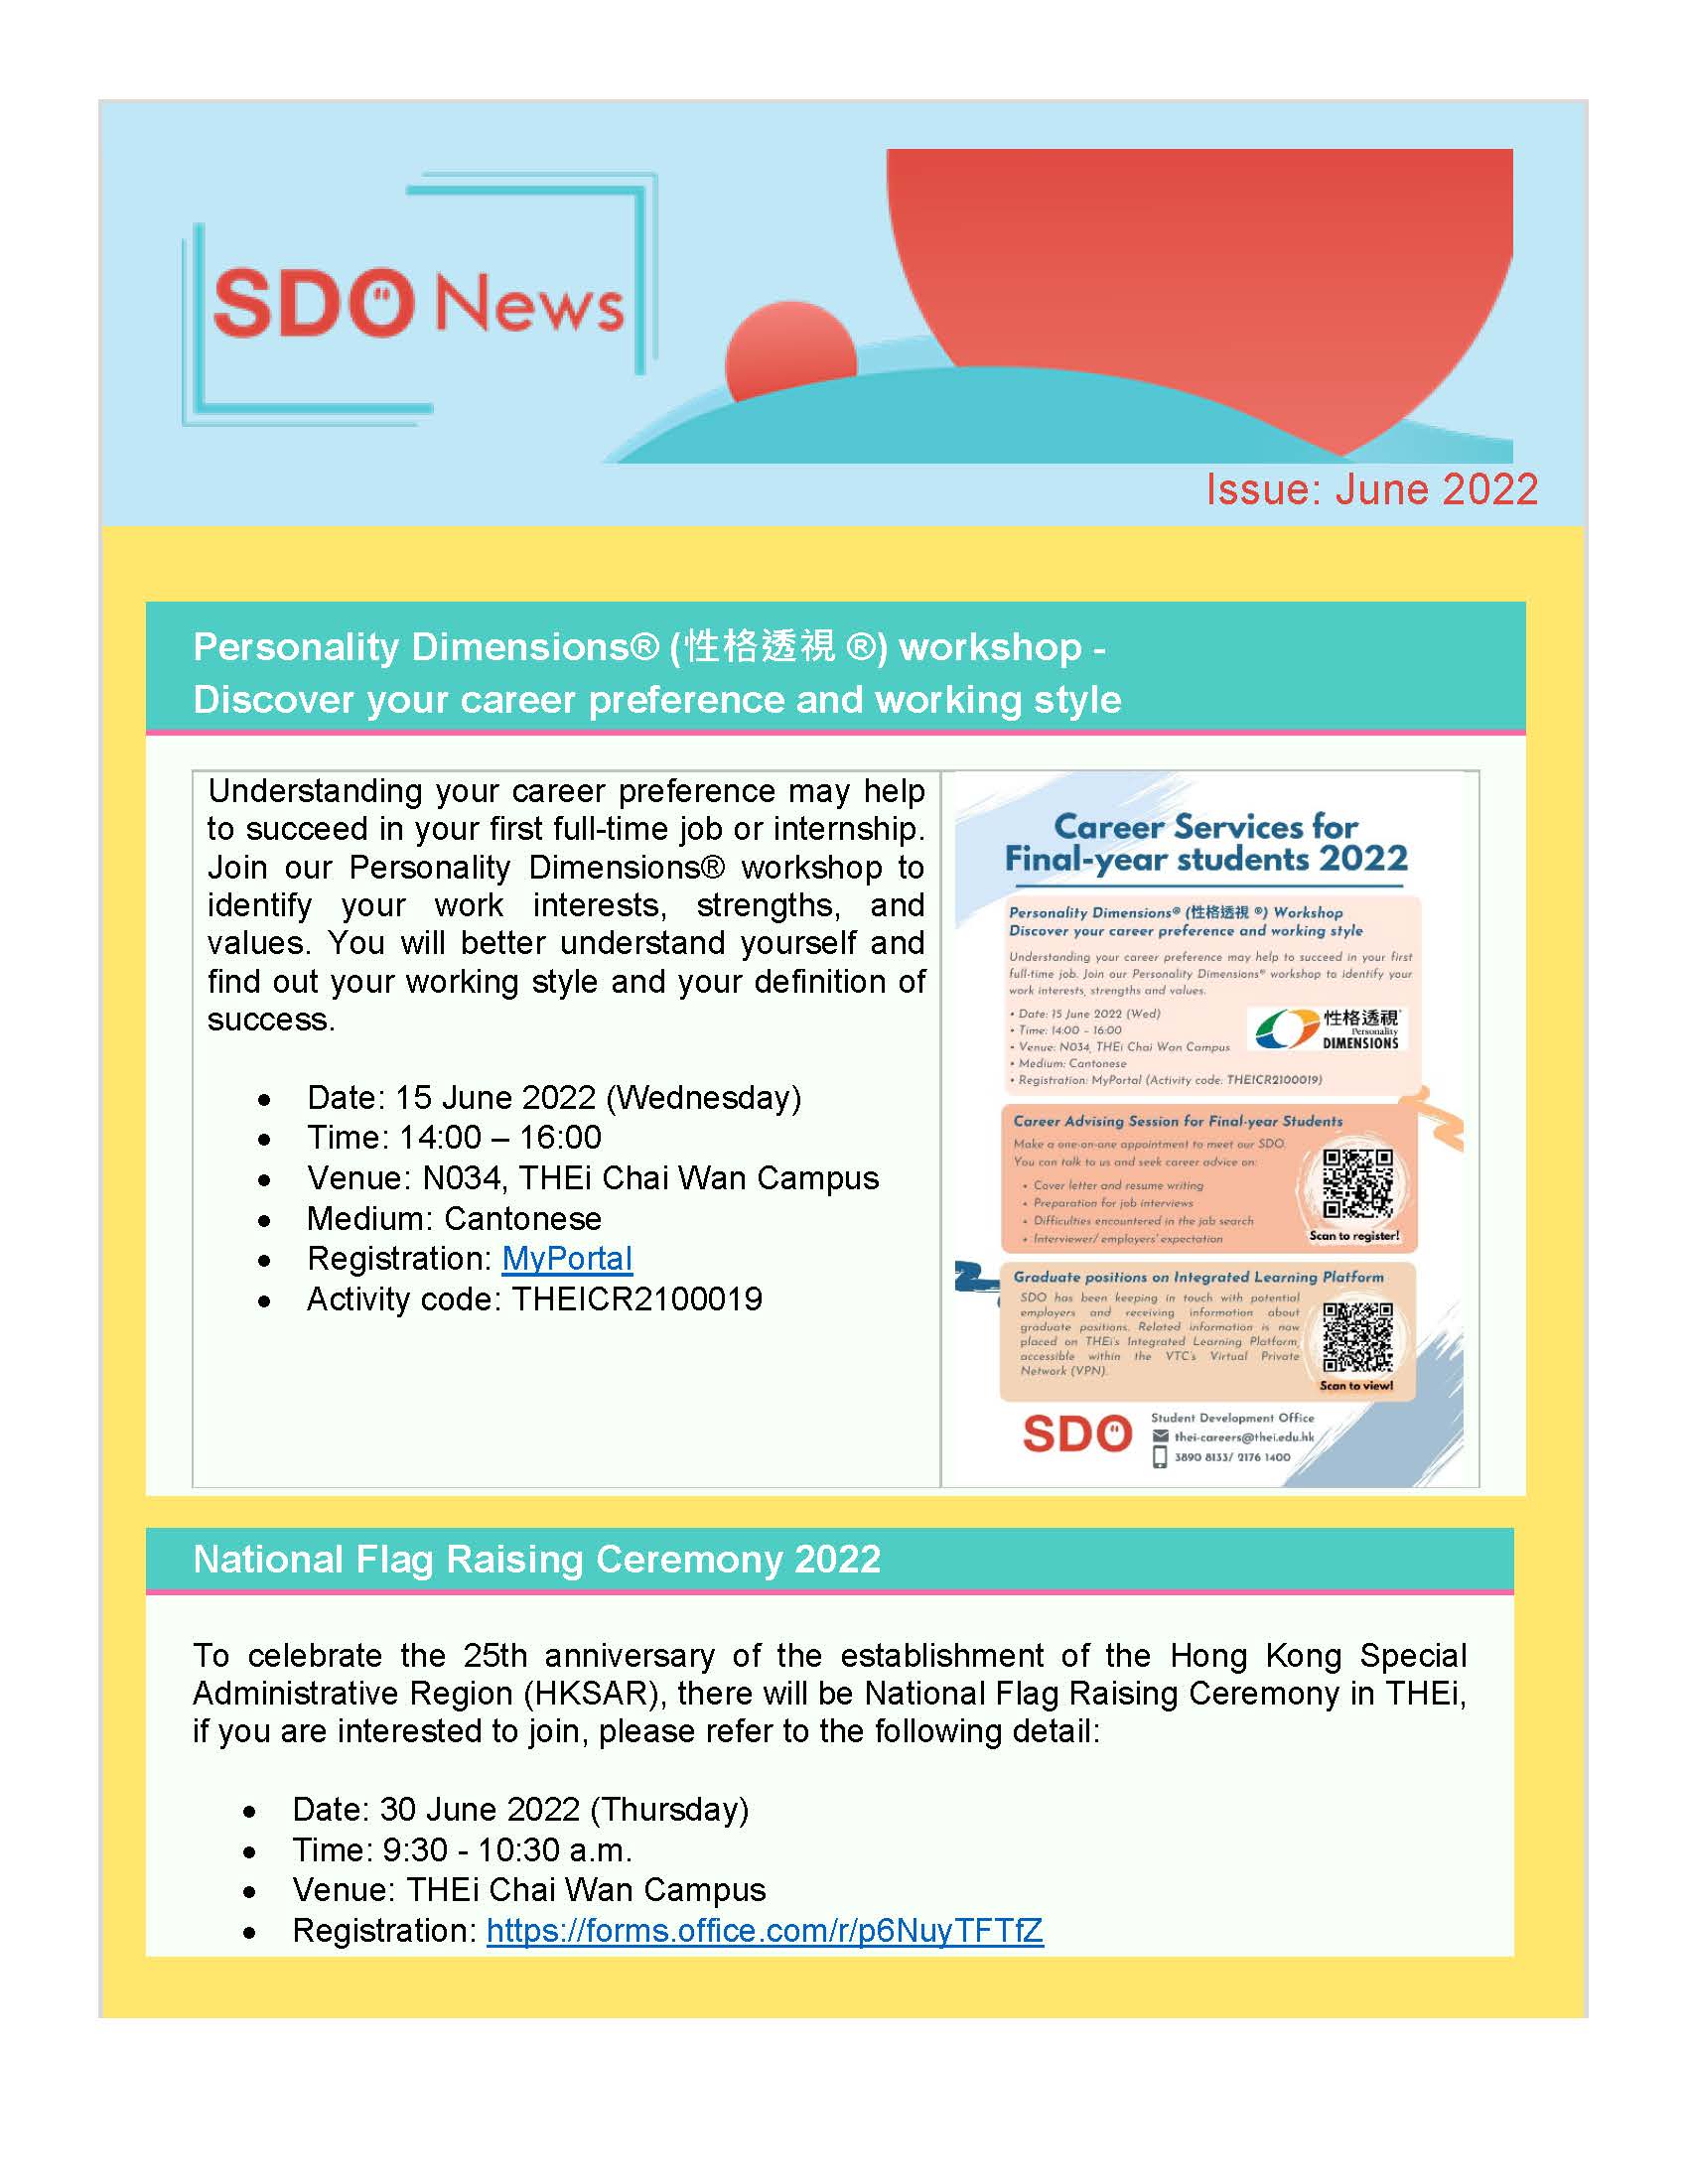 SDO News - June 2022